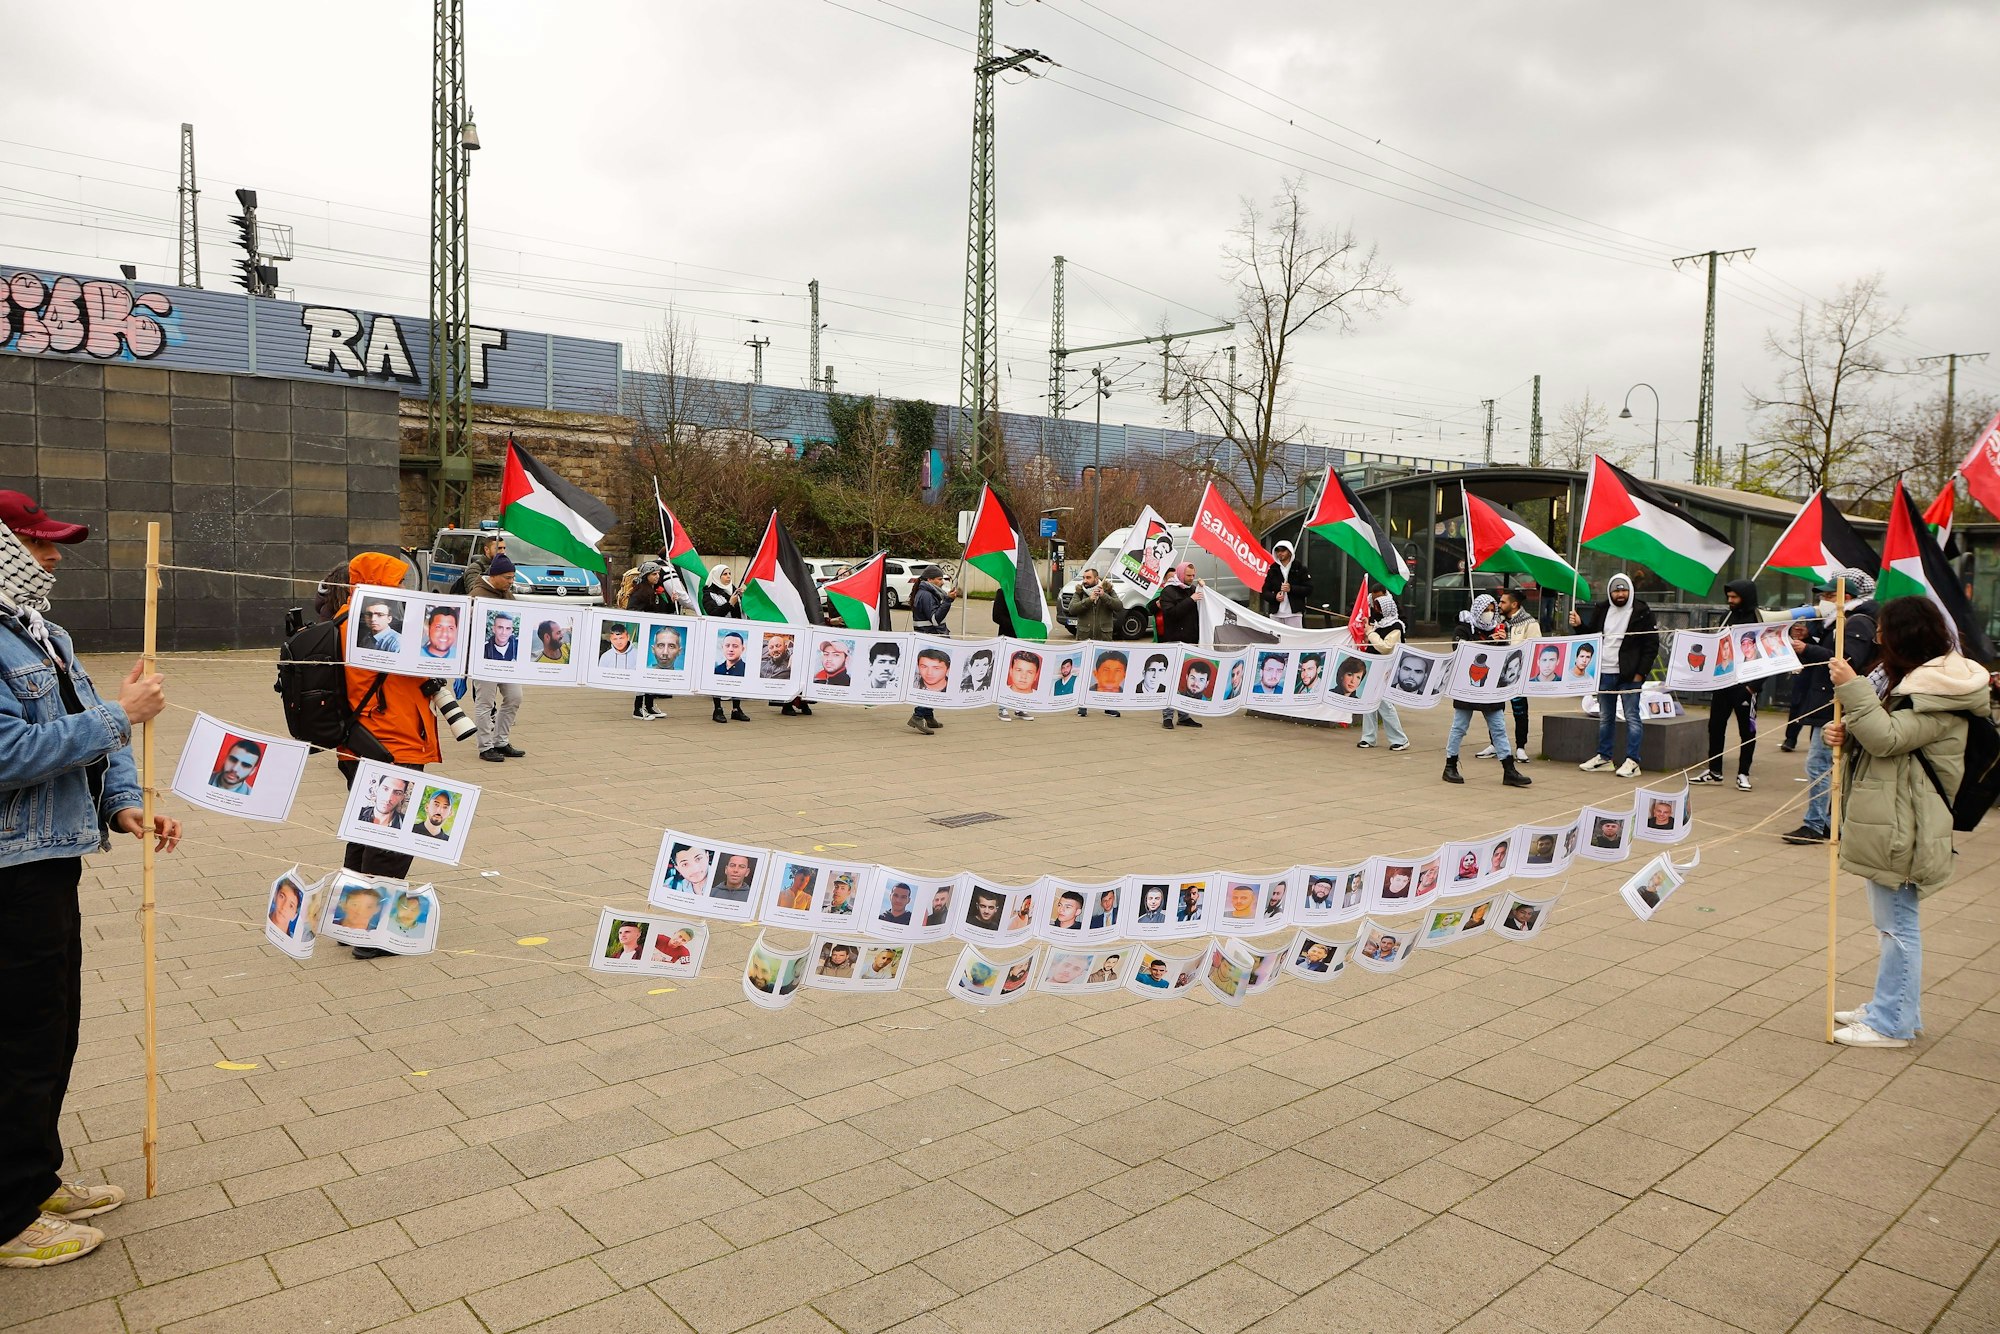 Die Kundgebung zum Tag der palästinensischen Gefangenen in Mülheim muss aufgelöst werden. Die Polizei hat gegen einen Teilnehmer ein Ordnungswidrigkeitsverfahren eingeleitet.